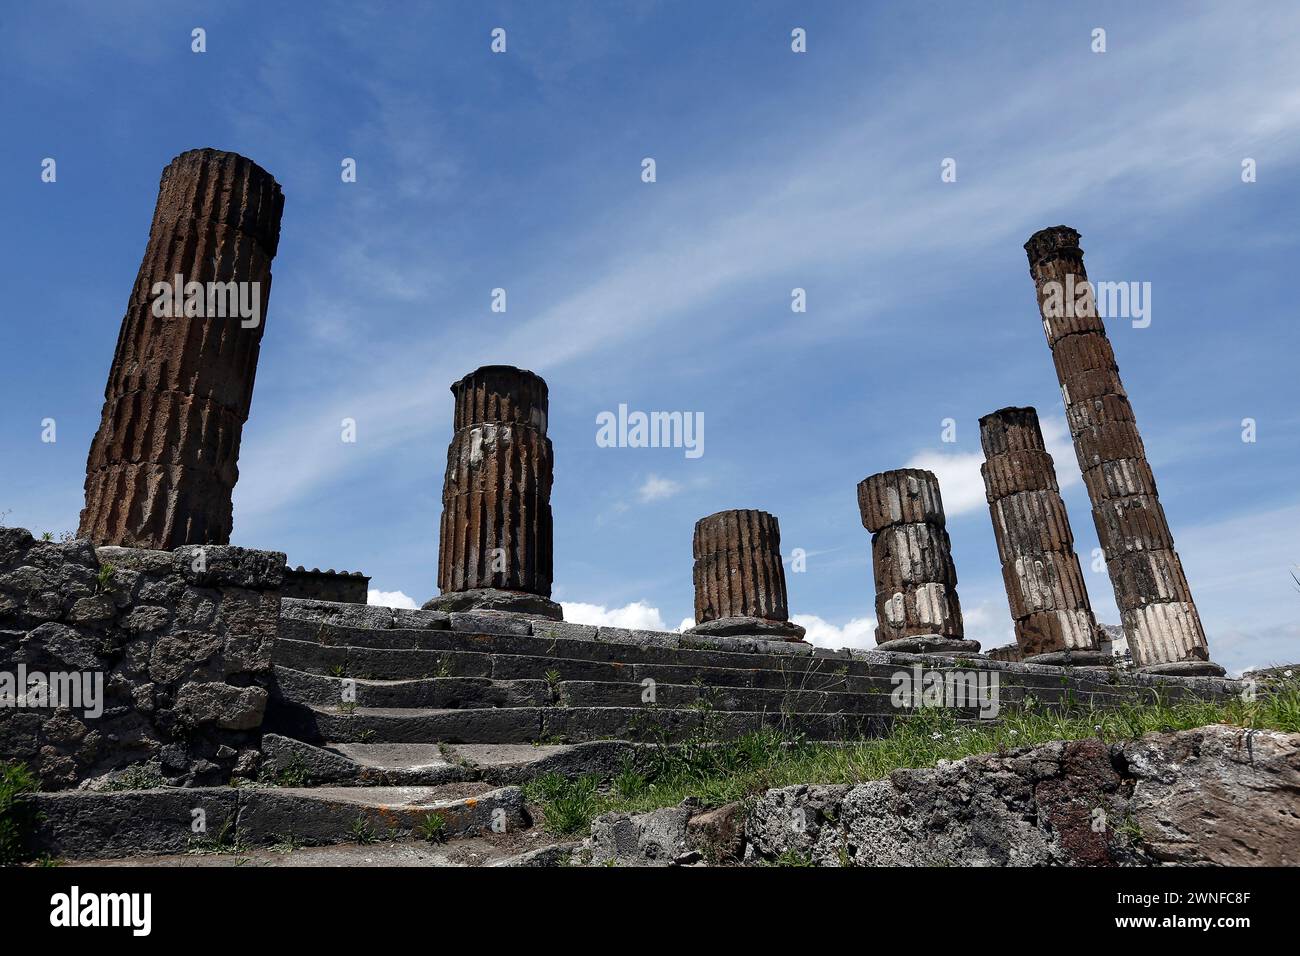 Berühmte antike Ruinen der Stadt Pompeji, Italien. Pompeji wurde nach dem Ausbruch des Vesuvs im Jahre 79 n. Chr. mit Asche und Bimsstein begraben. Stockfoto